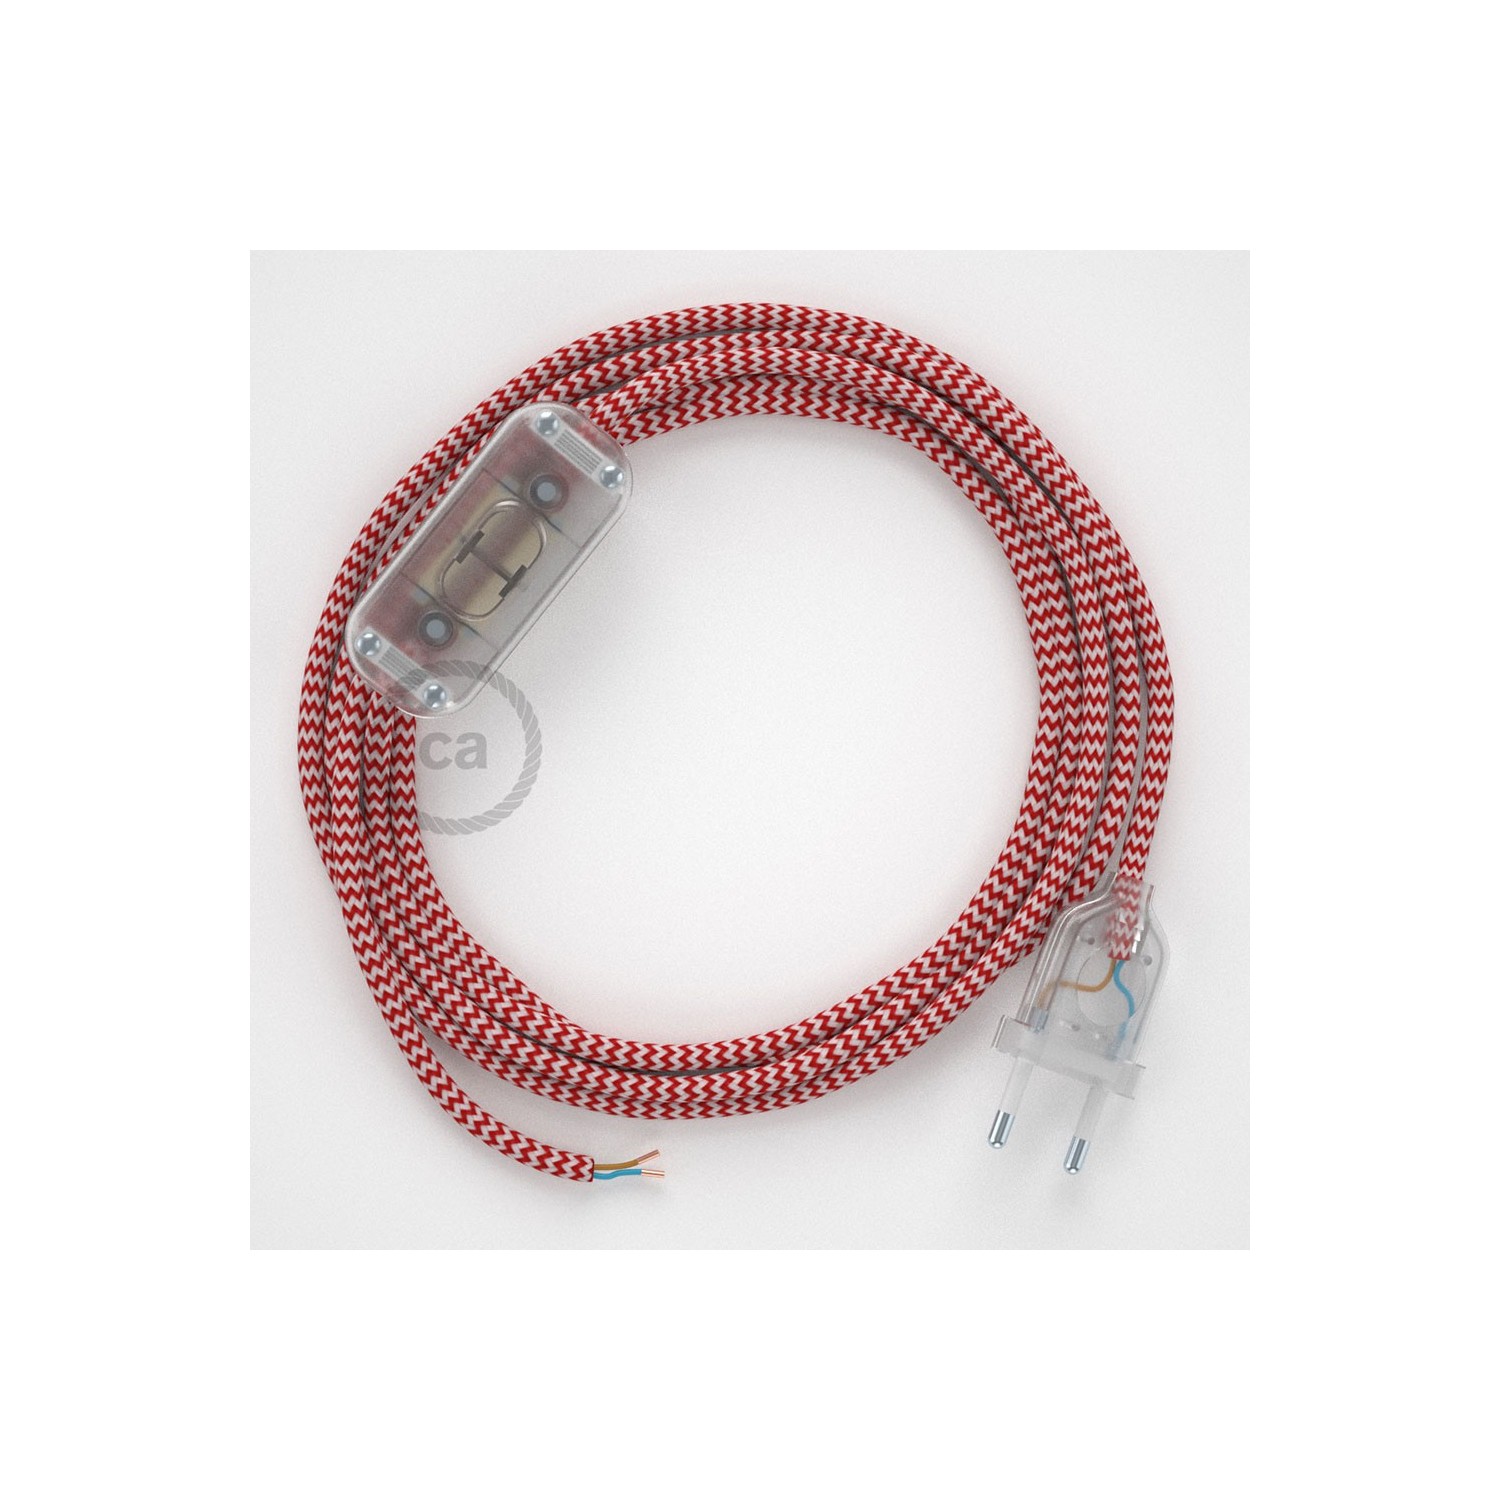 Cablaggio per lampada, cavo RZ09 Effetto Seta ZigZag Rosso 1,80 m. Scegli il colore dell'interruttore e della spina.